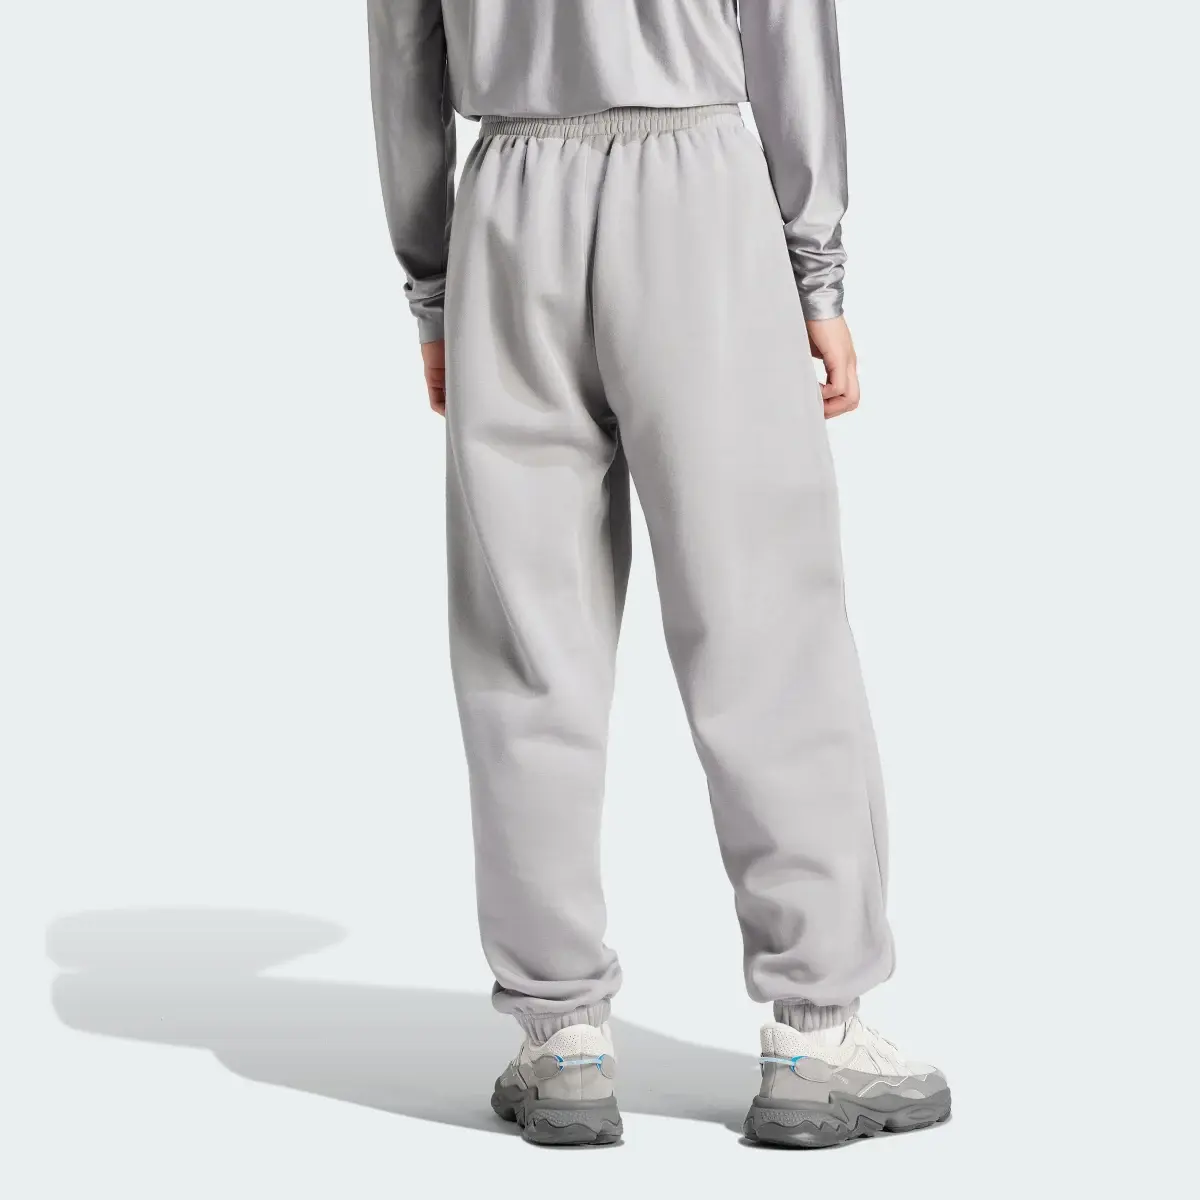 Adidas Spodnie dresowe Fashion. 2